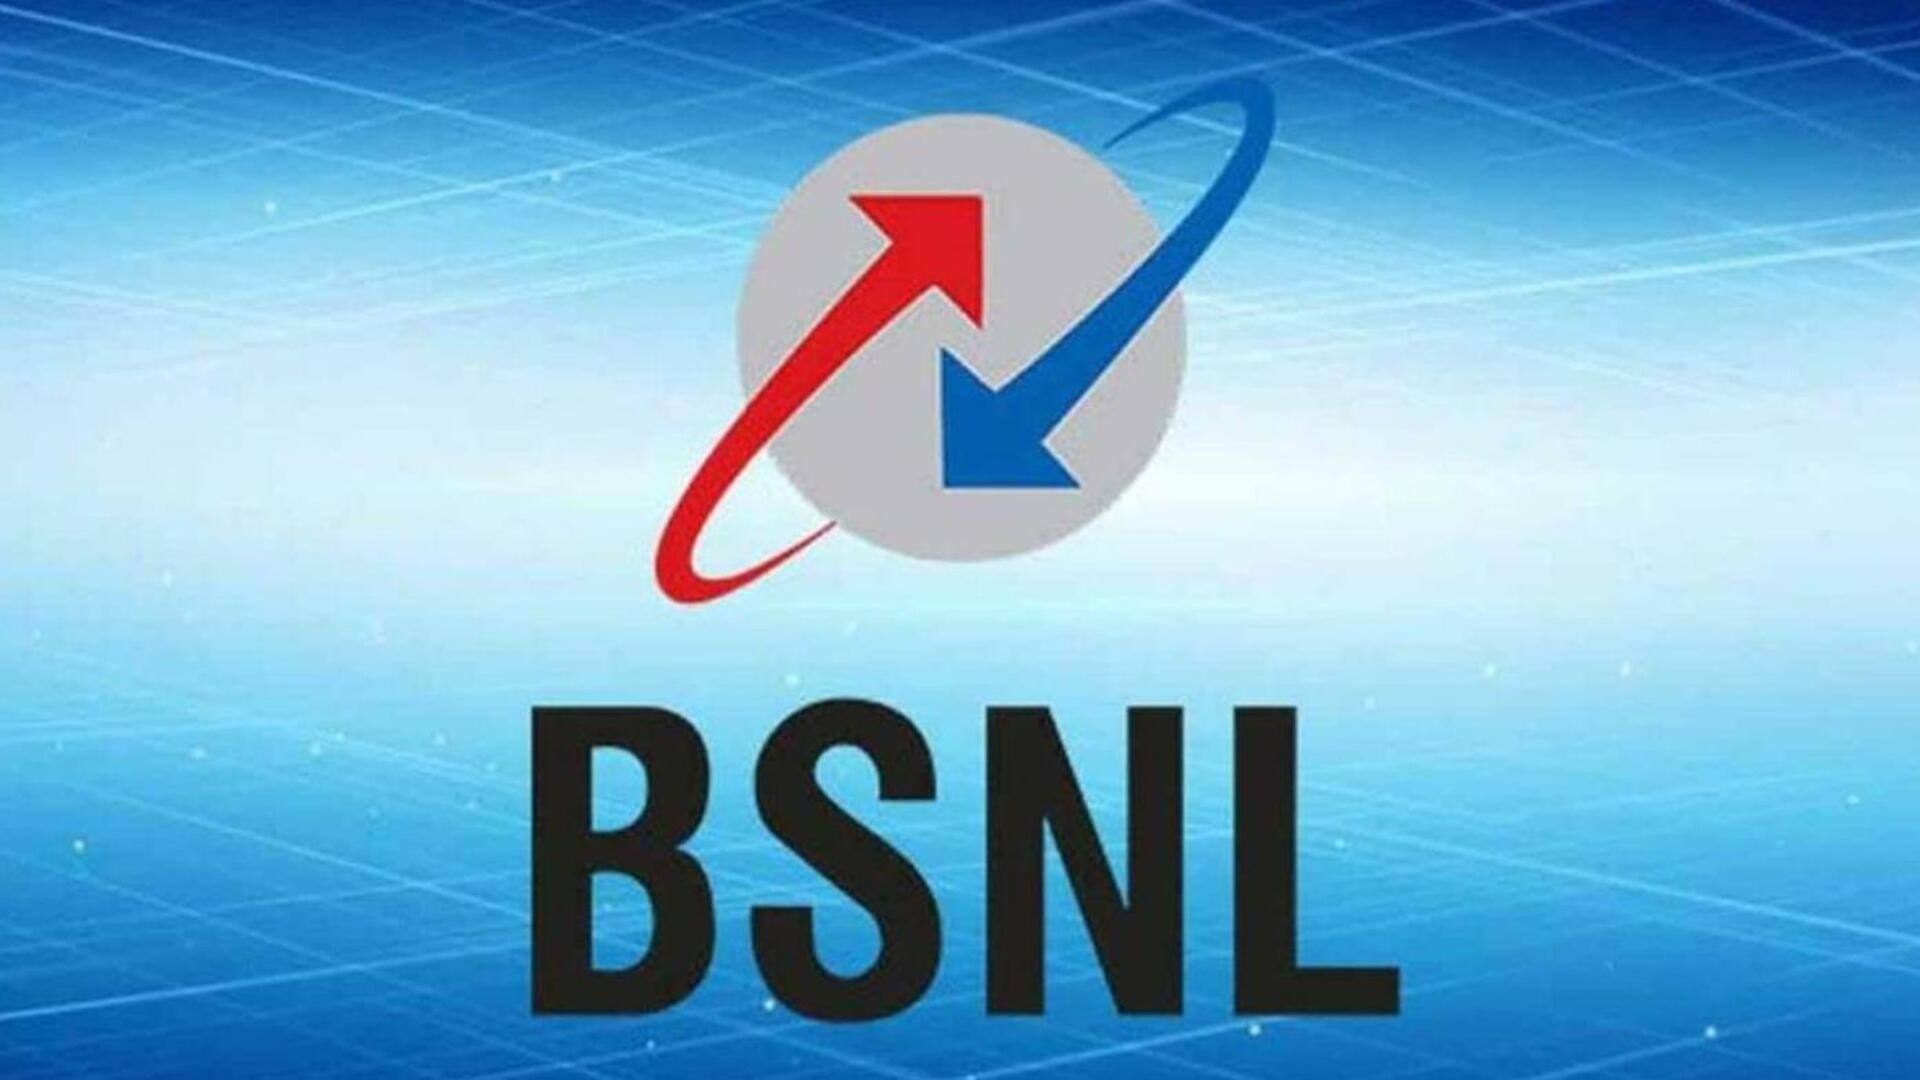 BSNL 4G अगले 2 हफ्ते में 200 जगहों पर होगी लाइव- IT मंत्री अश्विनी वैष्णव